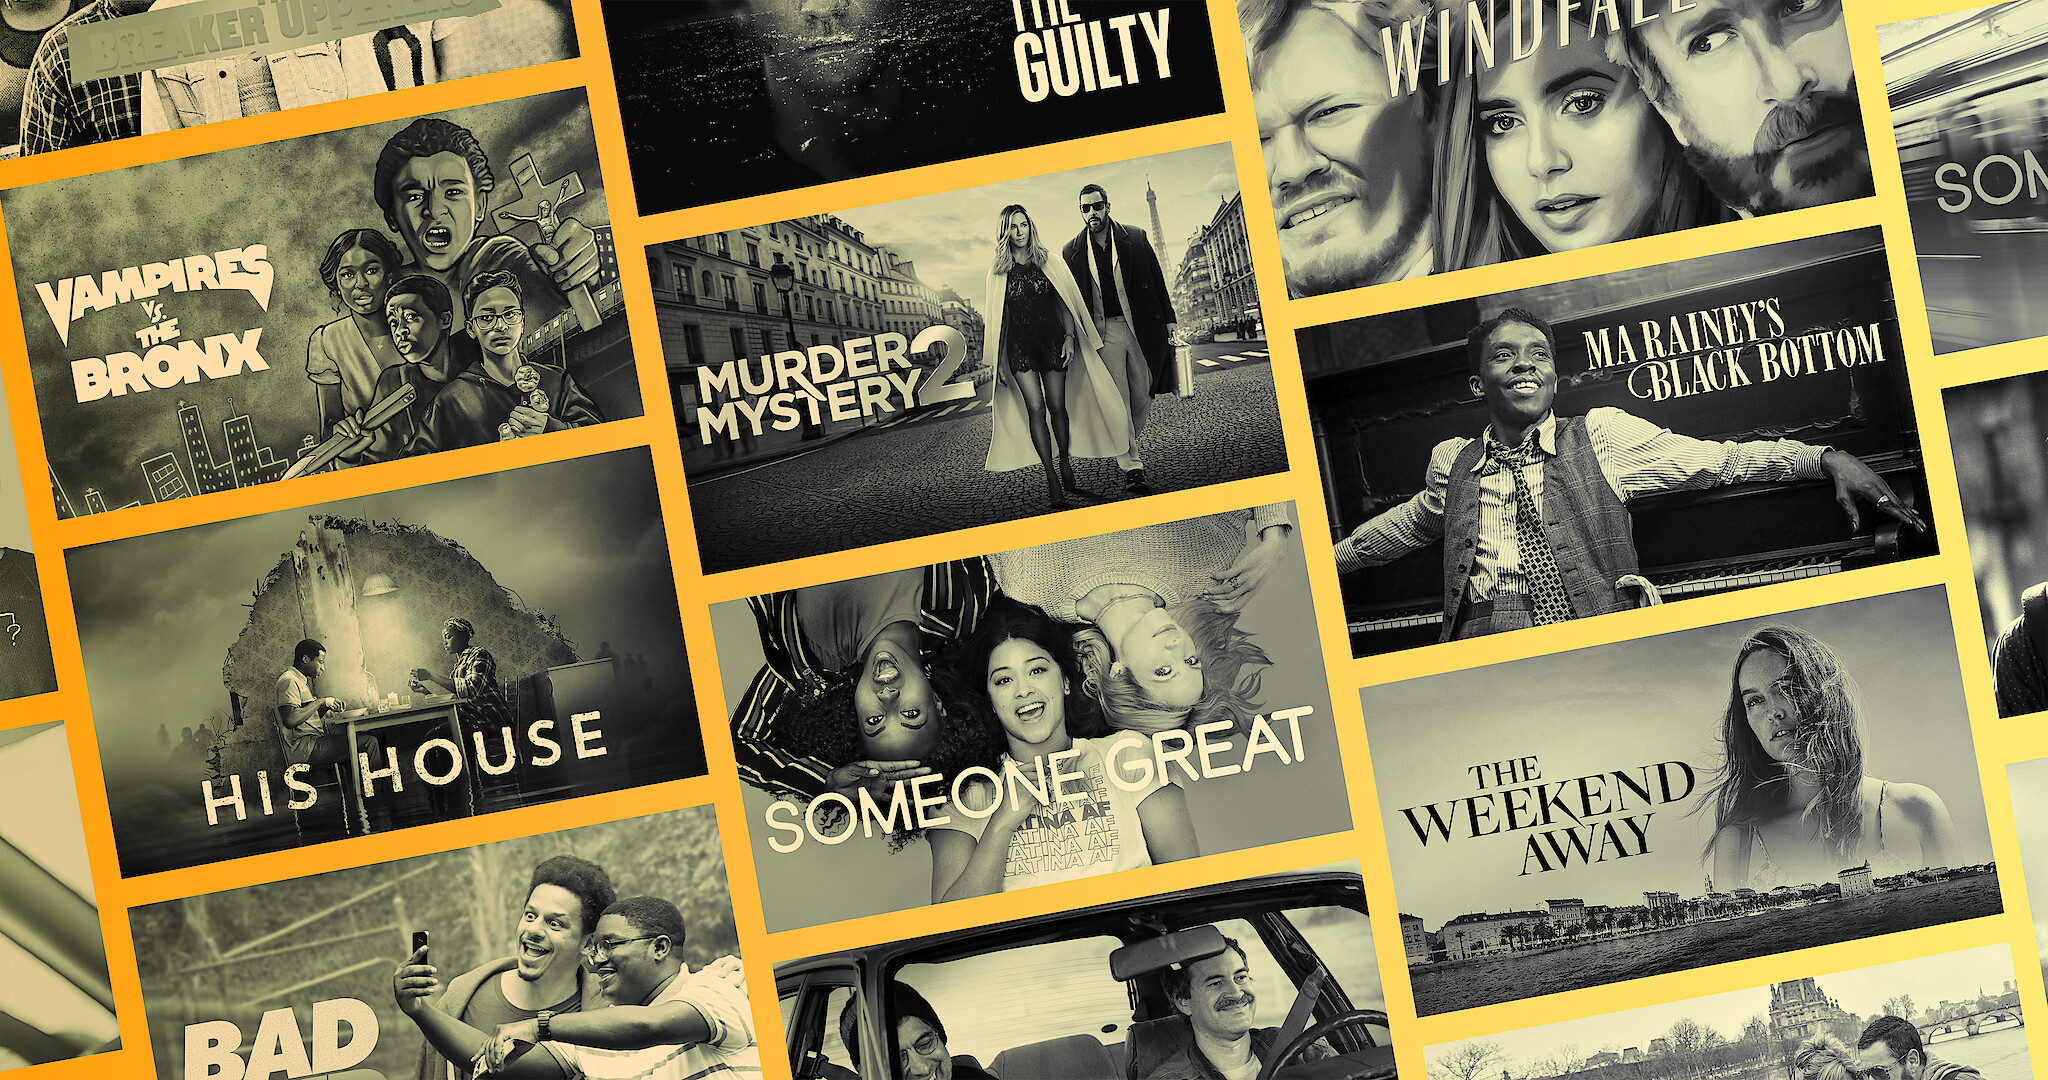 38 Best Thriller Movies on Netflix 2023 - Top Netflix Thriller Movies